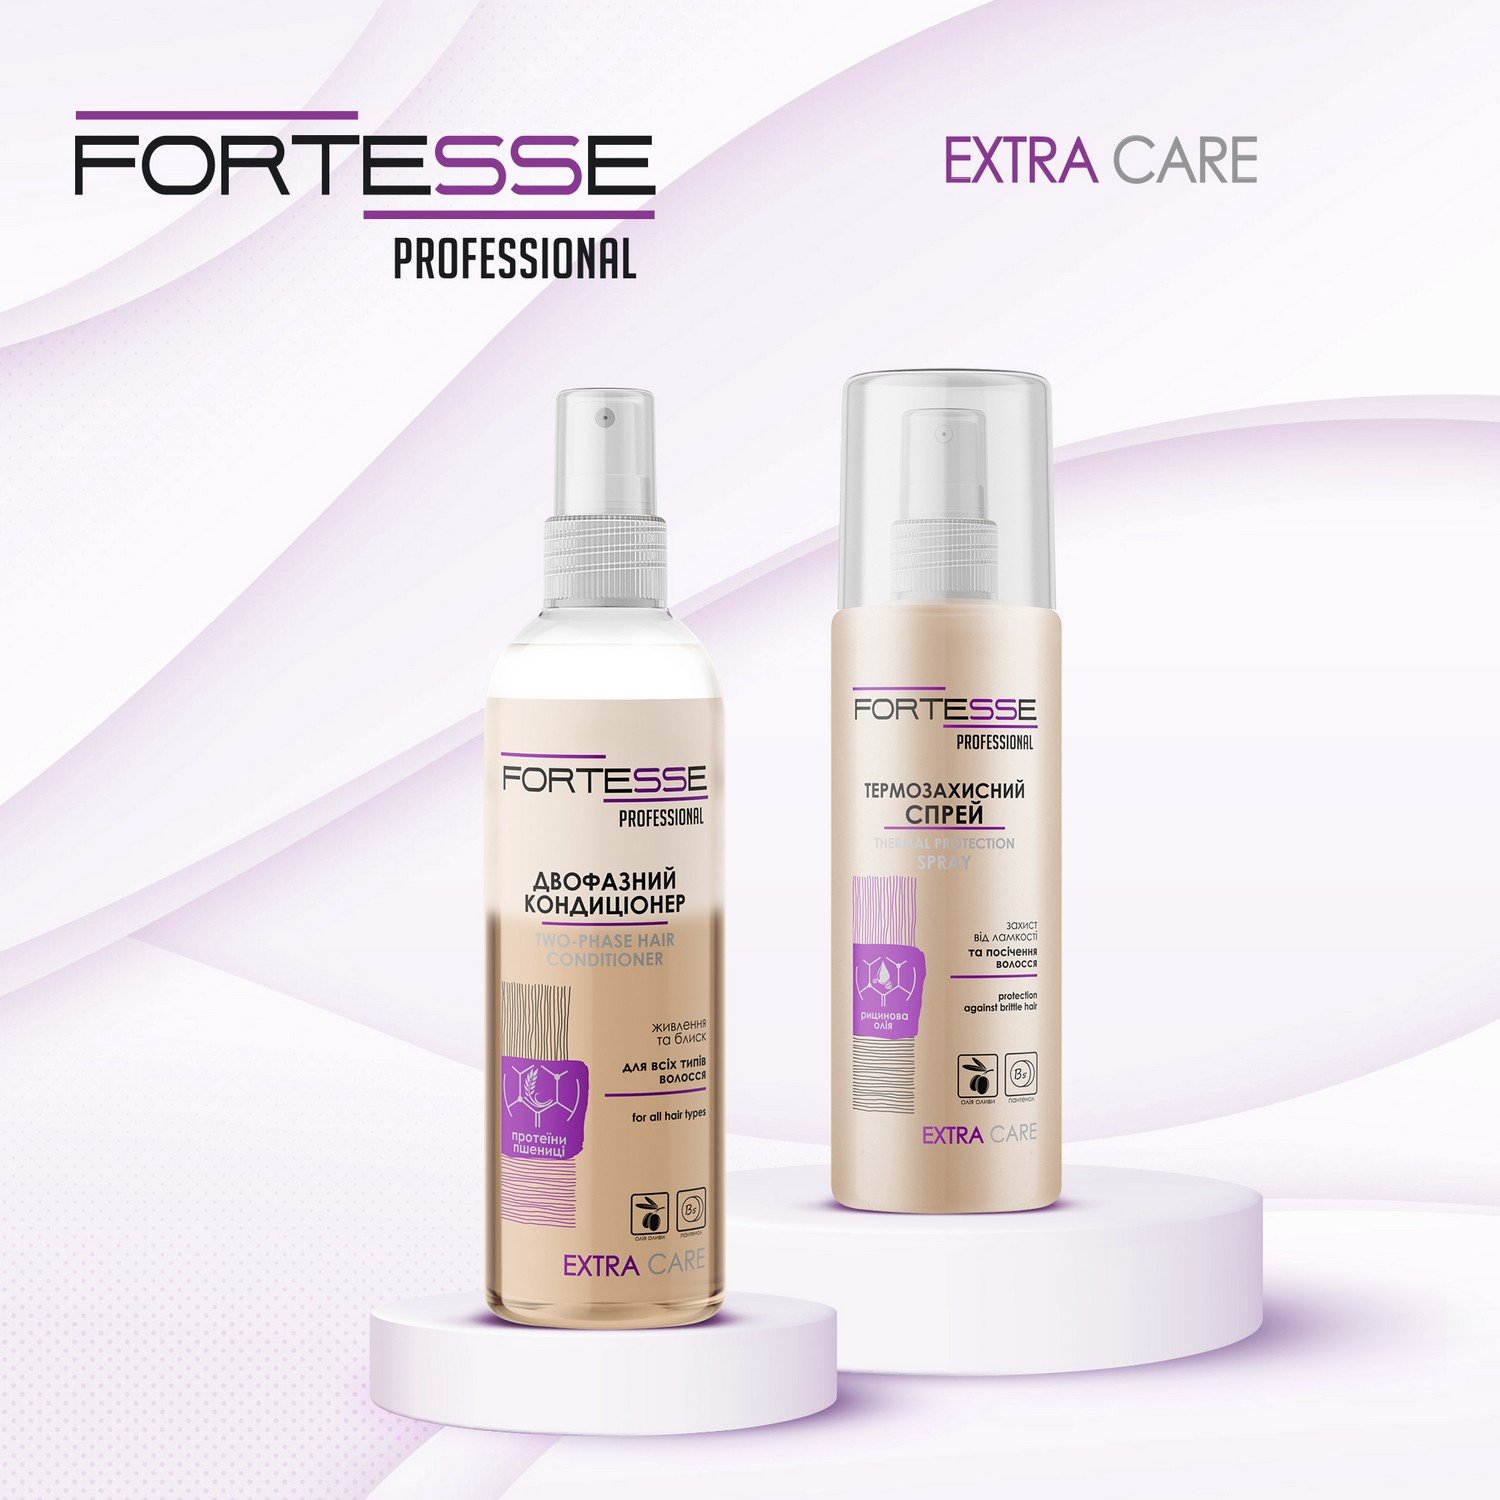 Термозащитный спрей Fortesse Professional Extra Care, защита от ломкости и секущихся волос, 150 мл - фото 4